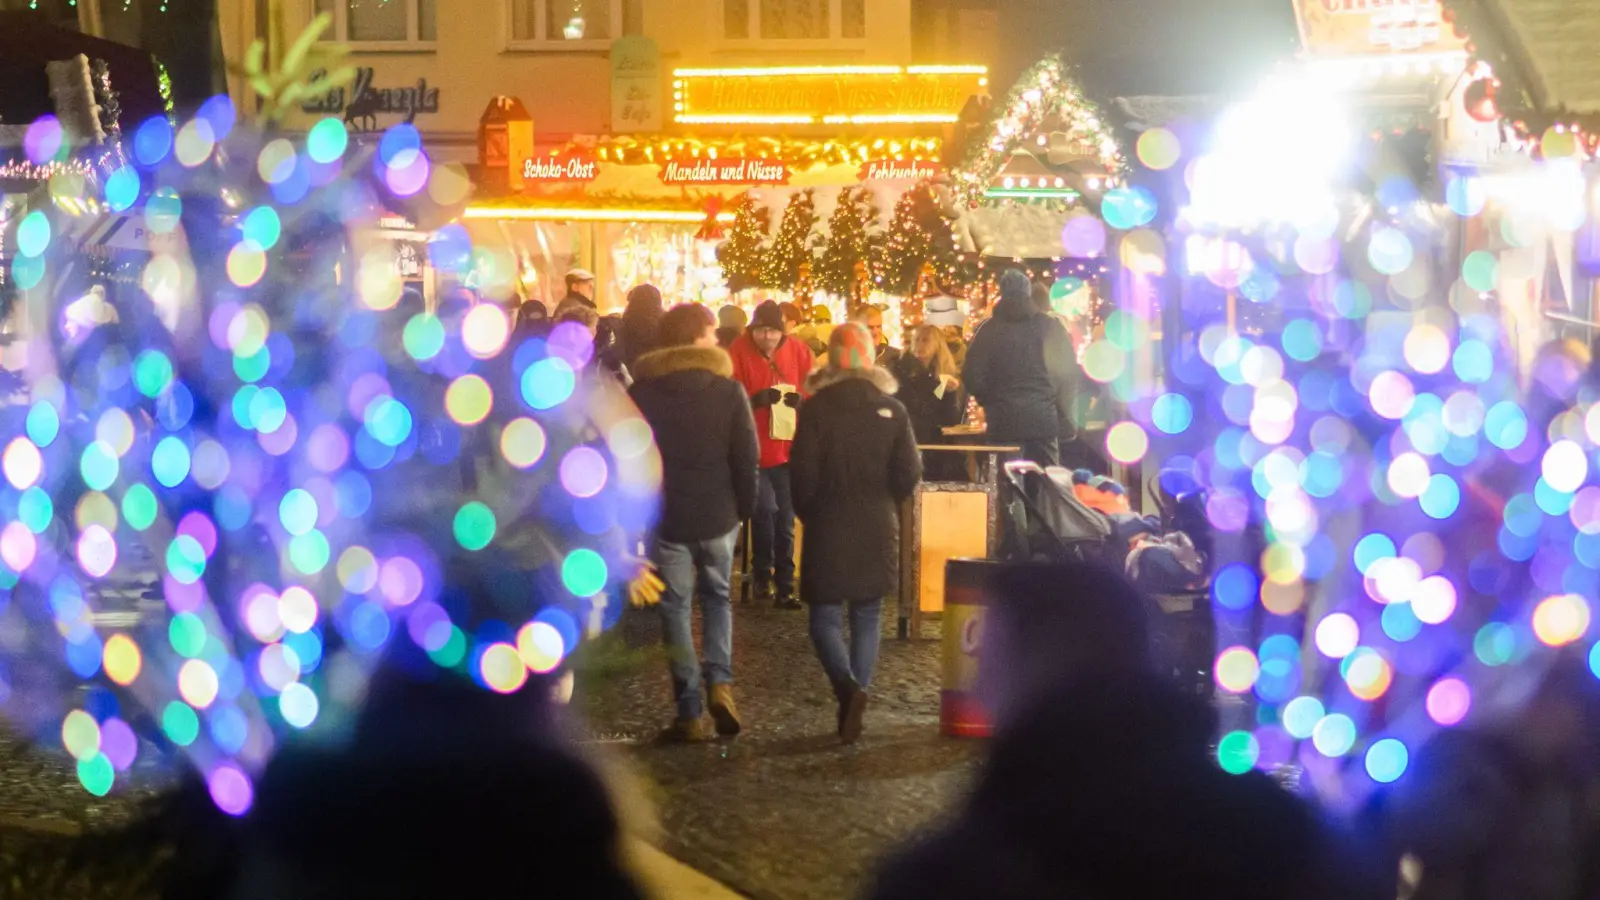 Zuletzt wurden in Nordrhein-Westfalen und Brandenburg zwei Jugendliche festgenommen, die einen Anschlag auf einen Weihnachtsmarkt geplant haben sollen. (Foto: Julian Stratenschulte/dpa)